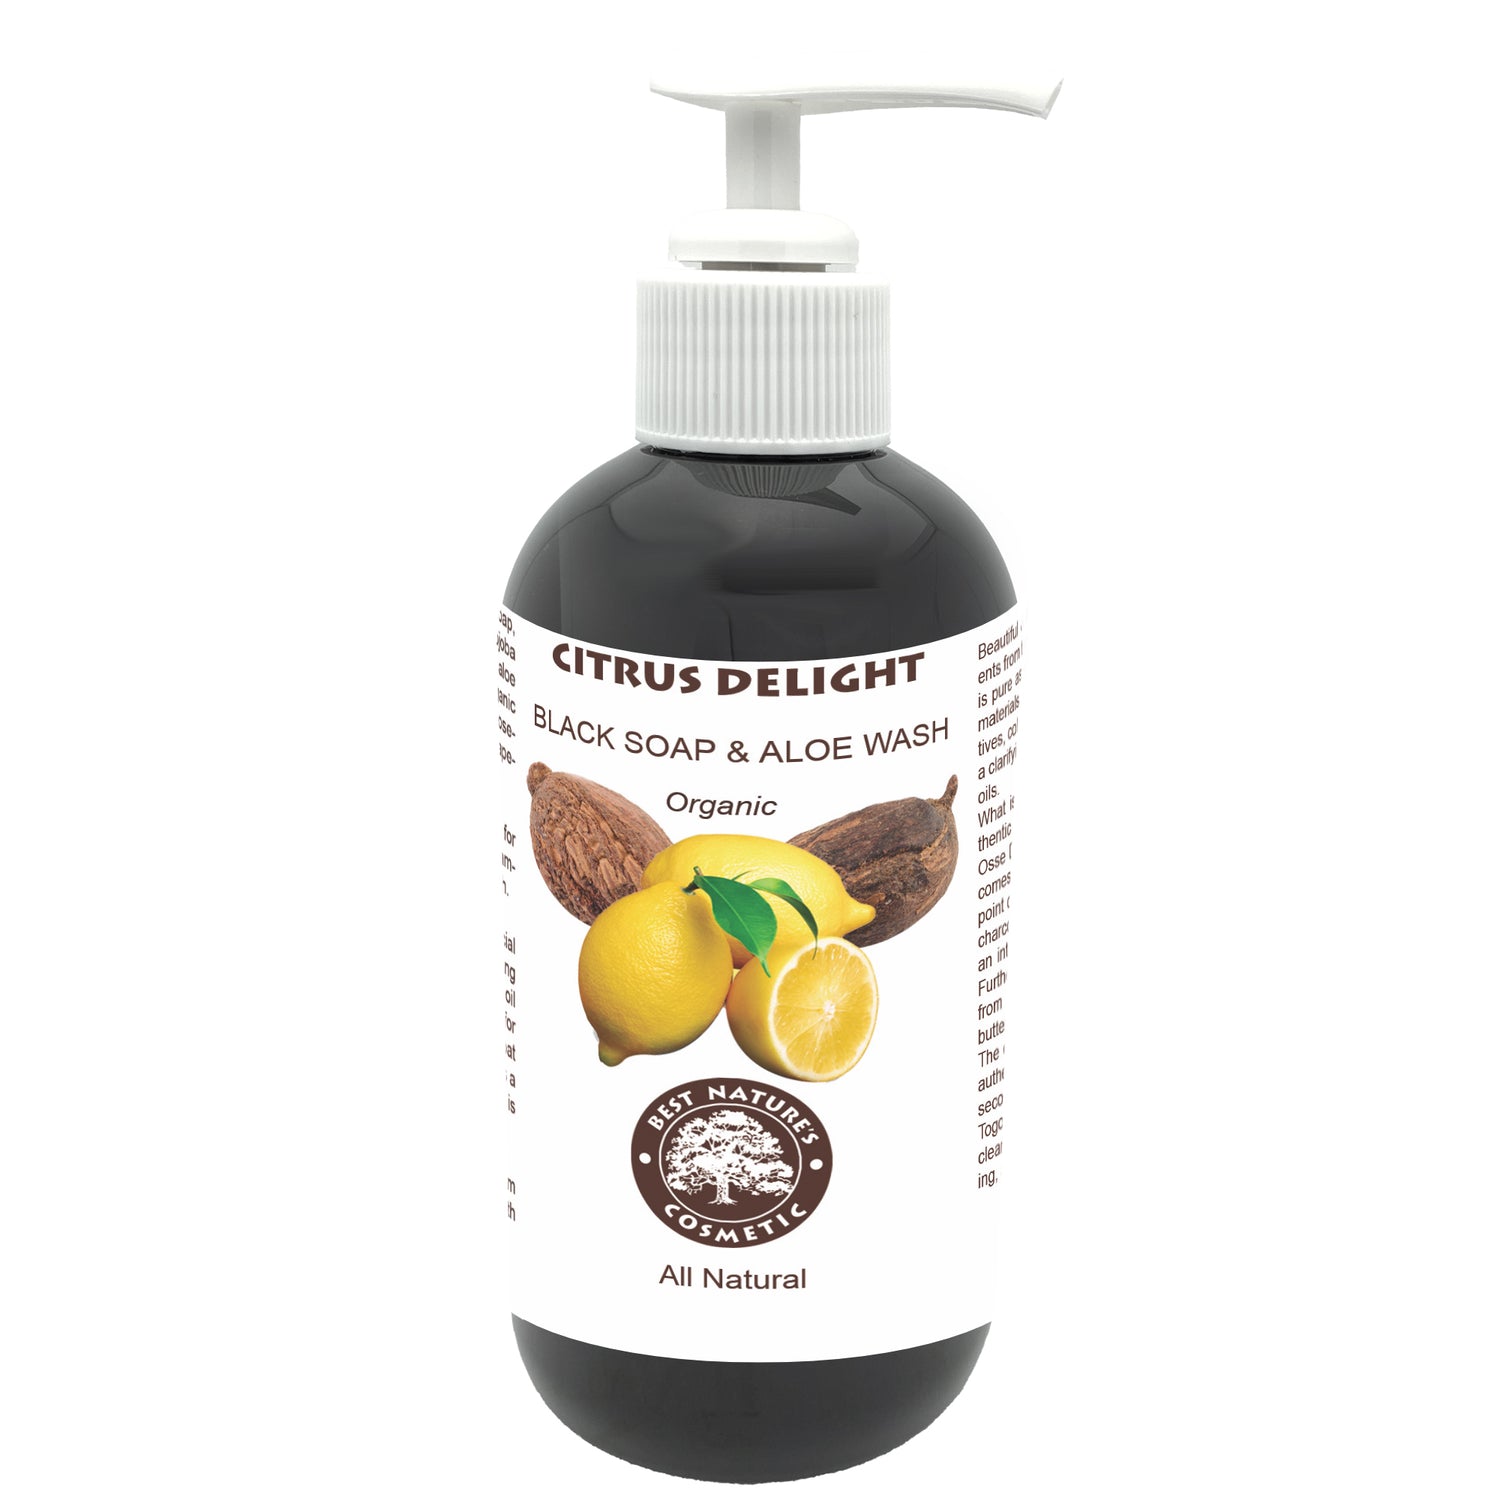 Citrus Delight. Black Soap & Aloe Wash (Organic)